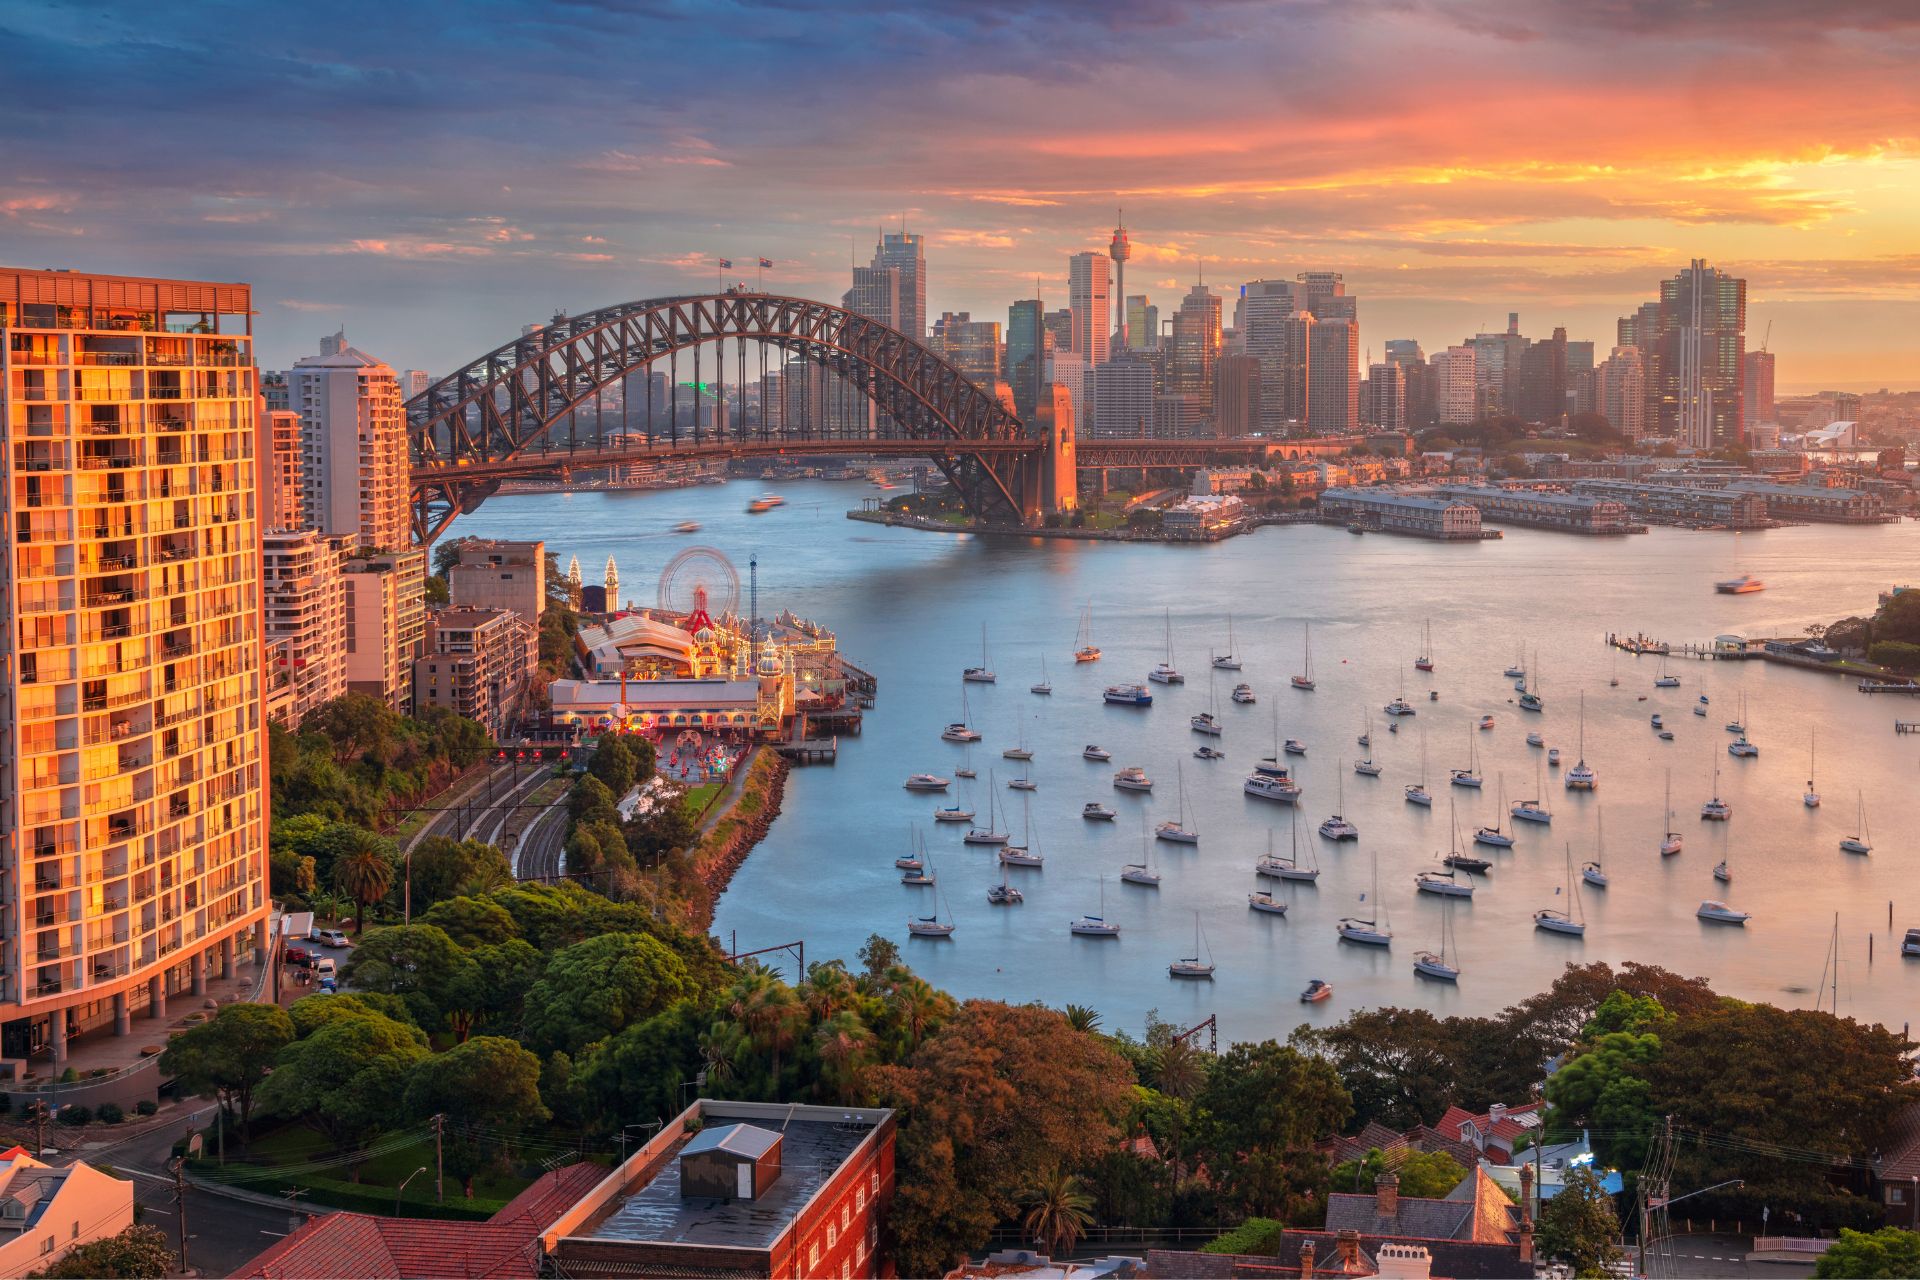 Sydney by Rudy Balasko ©Getty Images